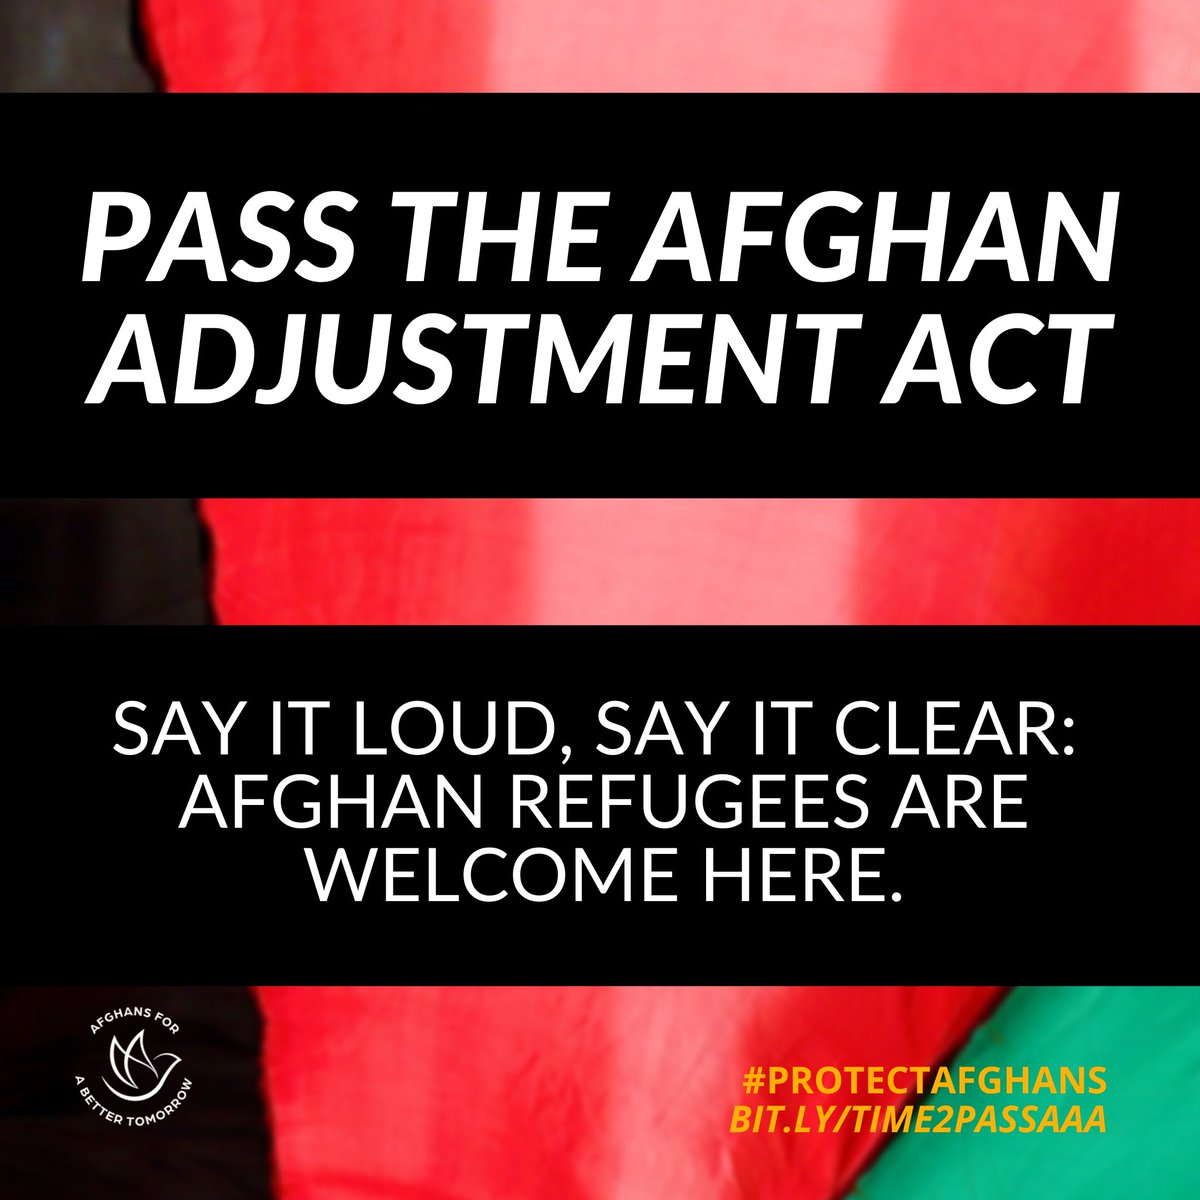 #AfghanEvac 
#ThisIsHome
#AdvocacyDays 
#Advocate4Afghans 
#WeSupportAAA
#FinishTheMission
#SupportOurVeterans 
#KeepOurPromise
⁦#AfghanAdjustmentAct 

@HouseDemocrats⁩ @HouseGOP⁩ ⁦@SenateDems⁩ ⁦@SenateGOP⁩